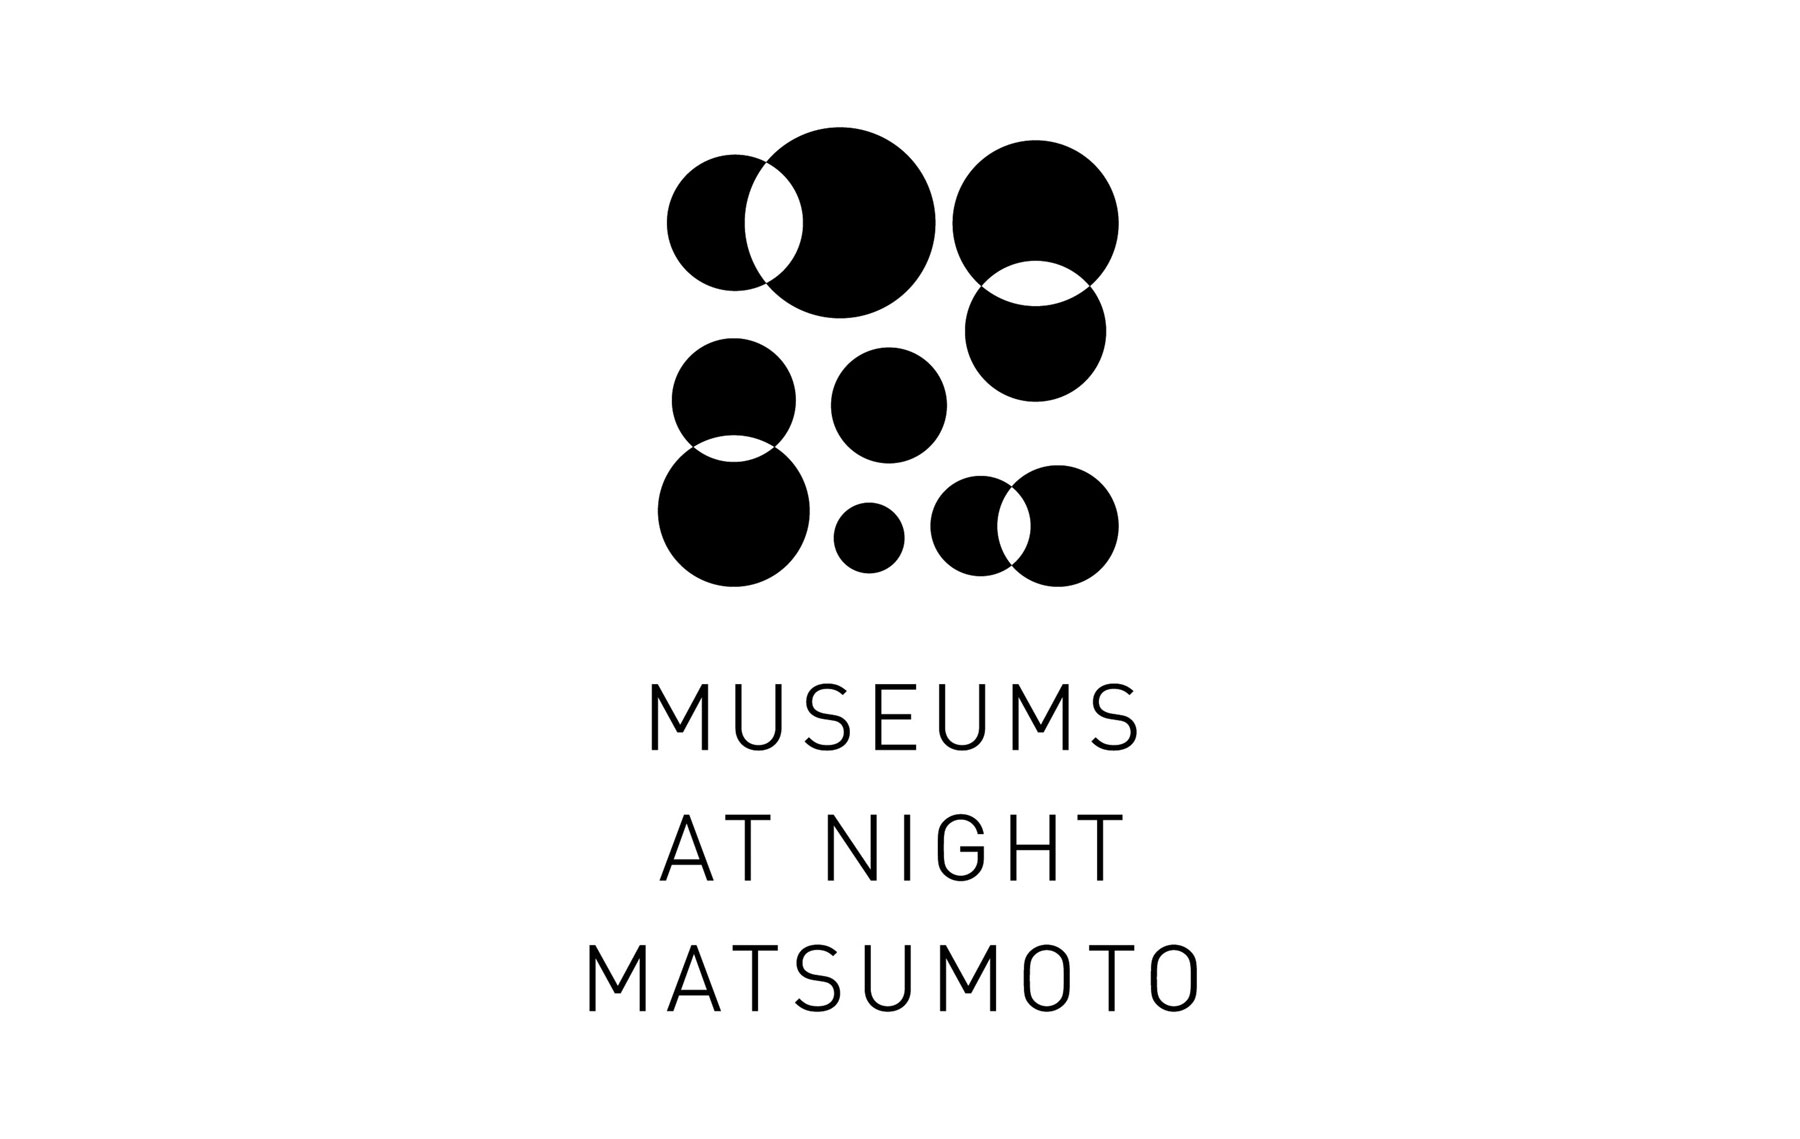 Matsumoto Night Museum